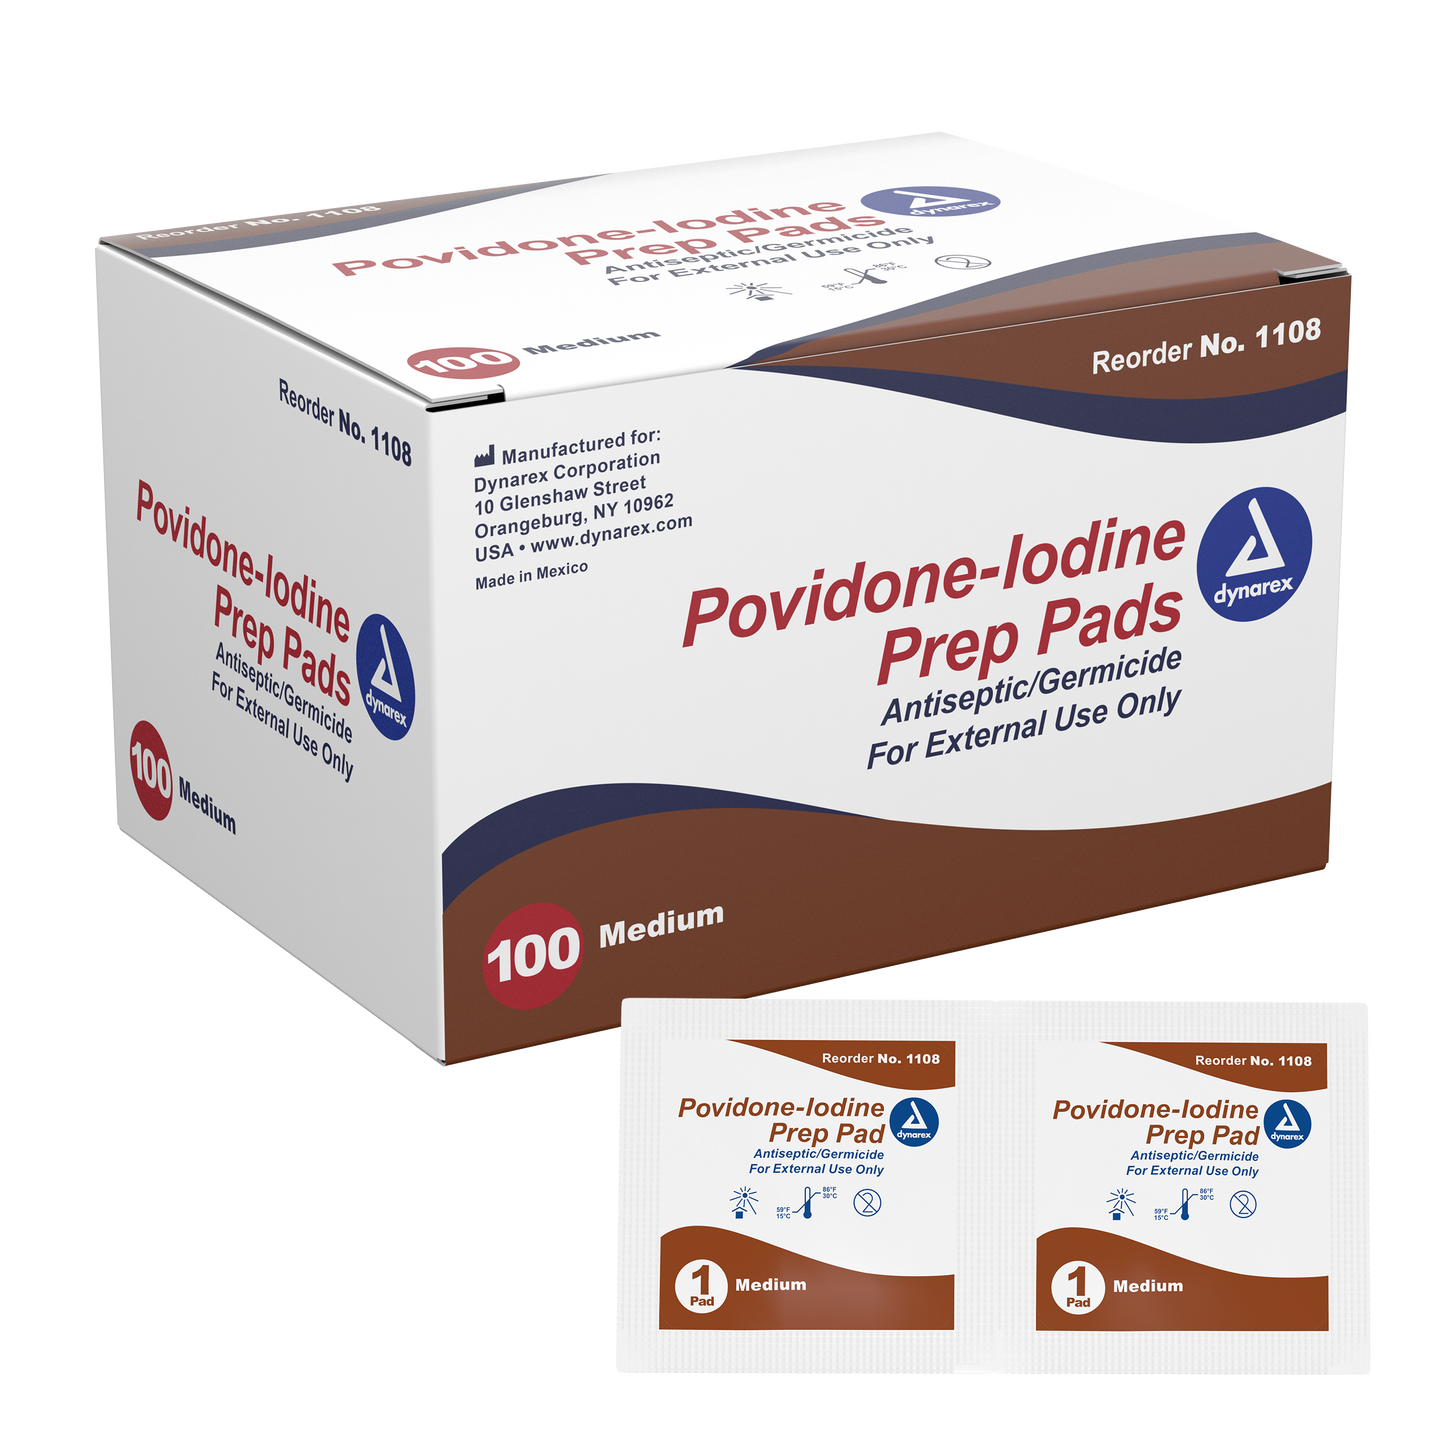 Providone Iodine single use Prep pads